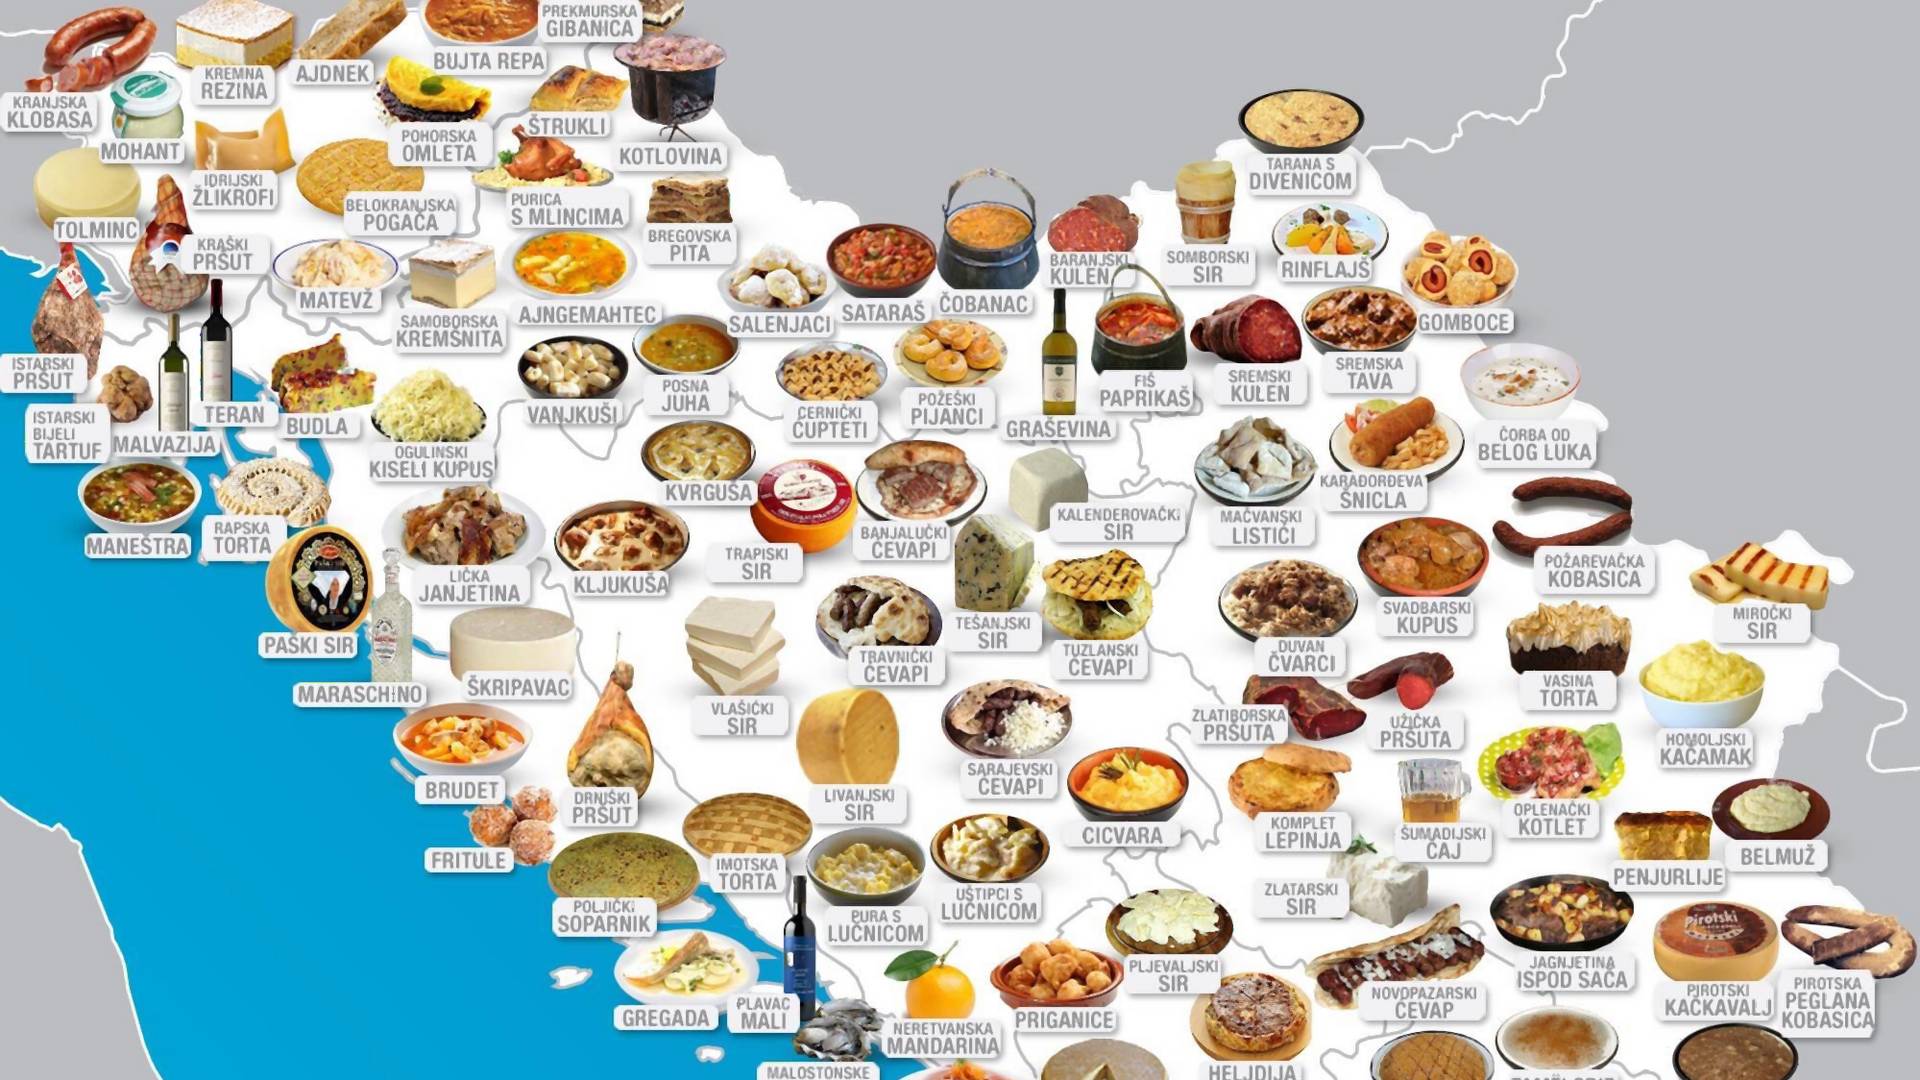 Ovaj sajt će vam pokazati gde se jede najbolja hrana u bivšoj Jugoslaviji i bićete gladni čim vidite slike